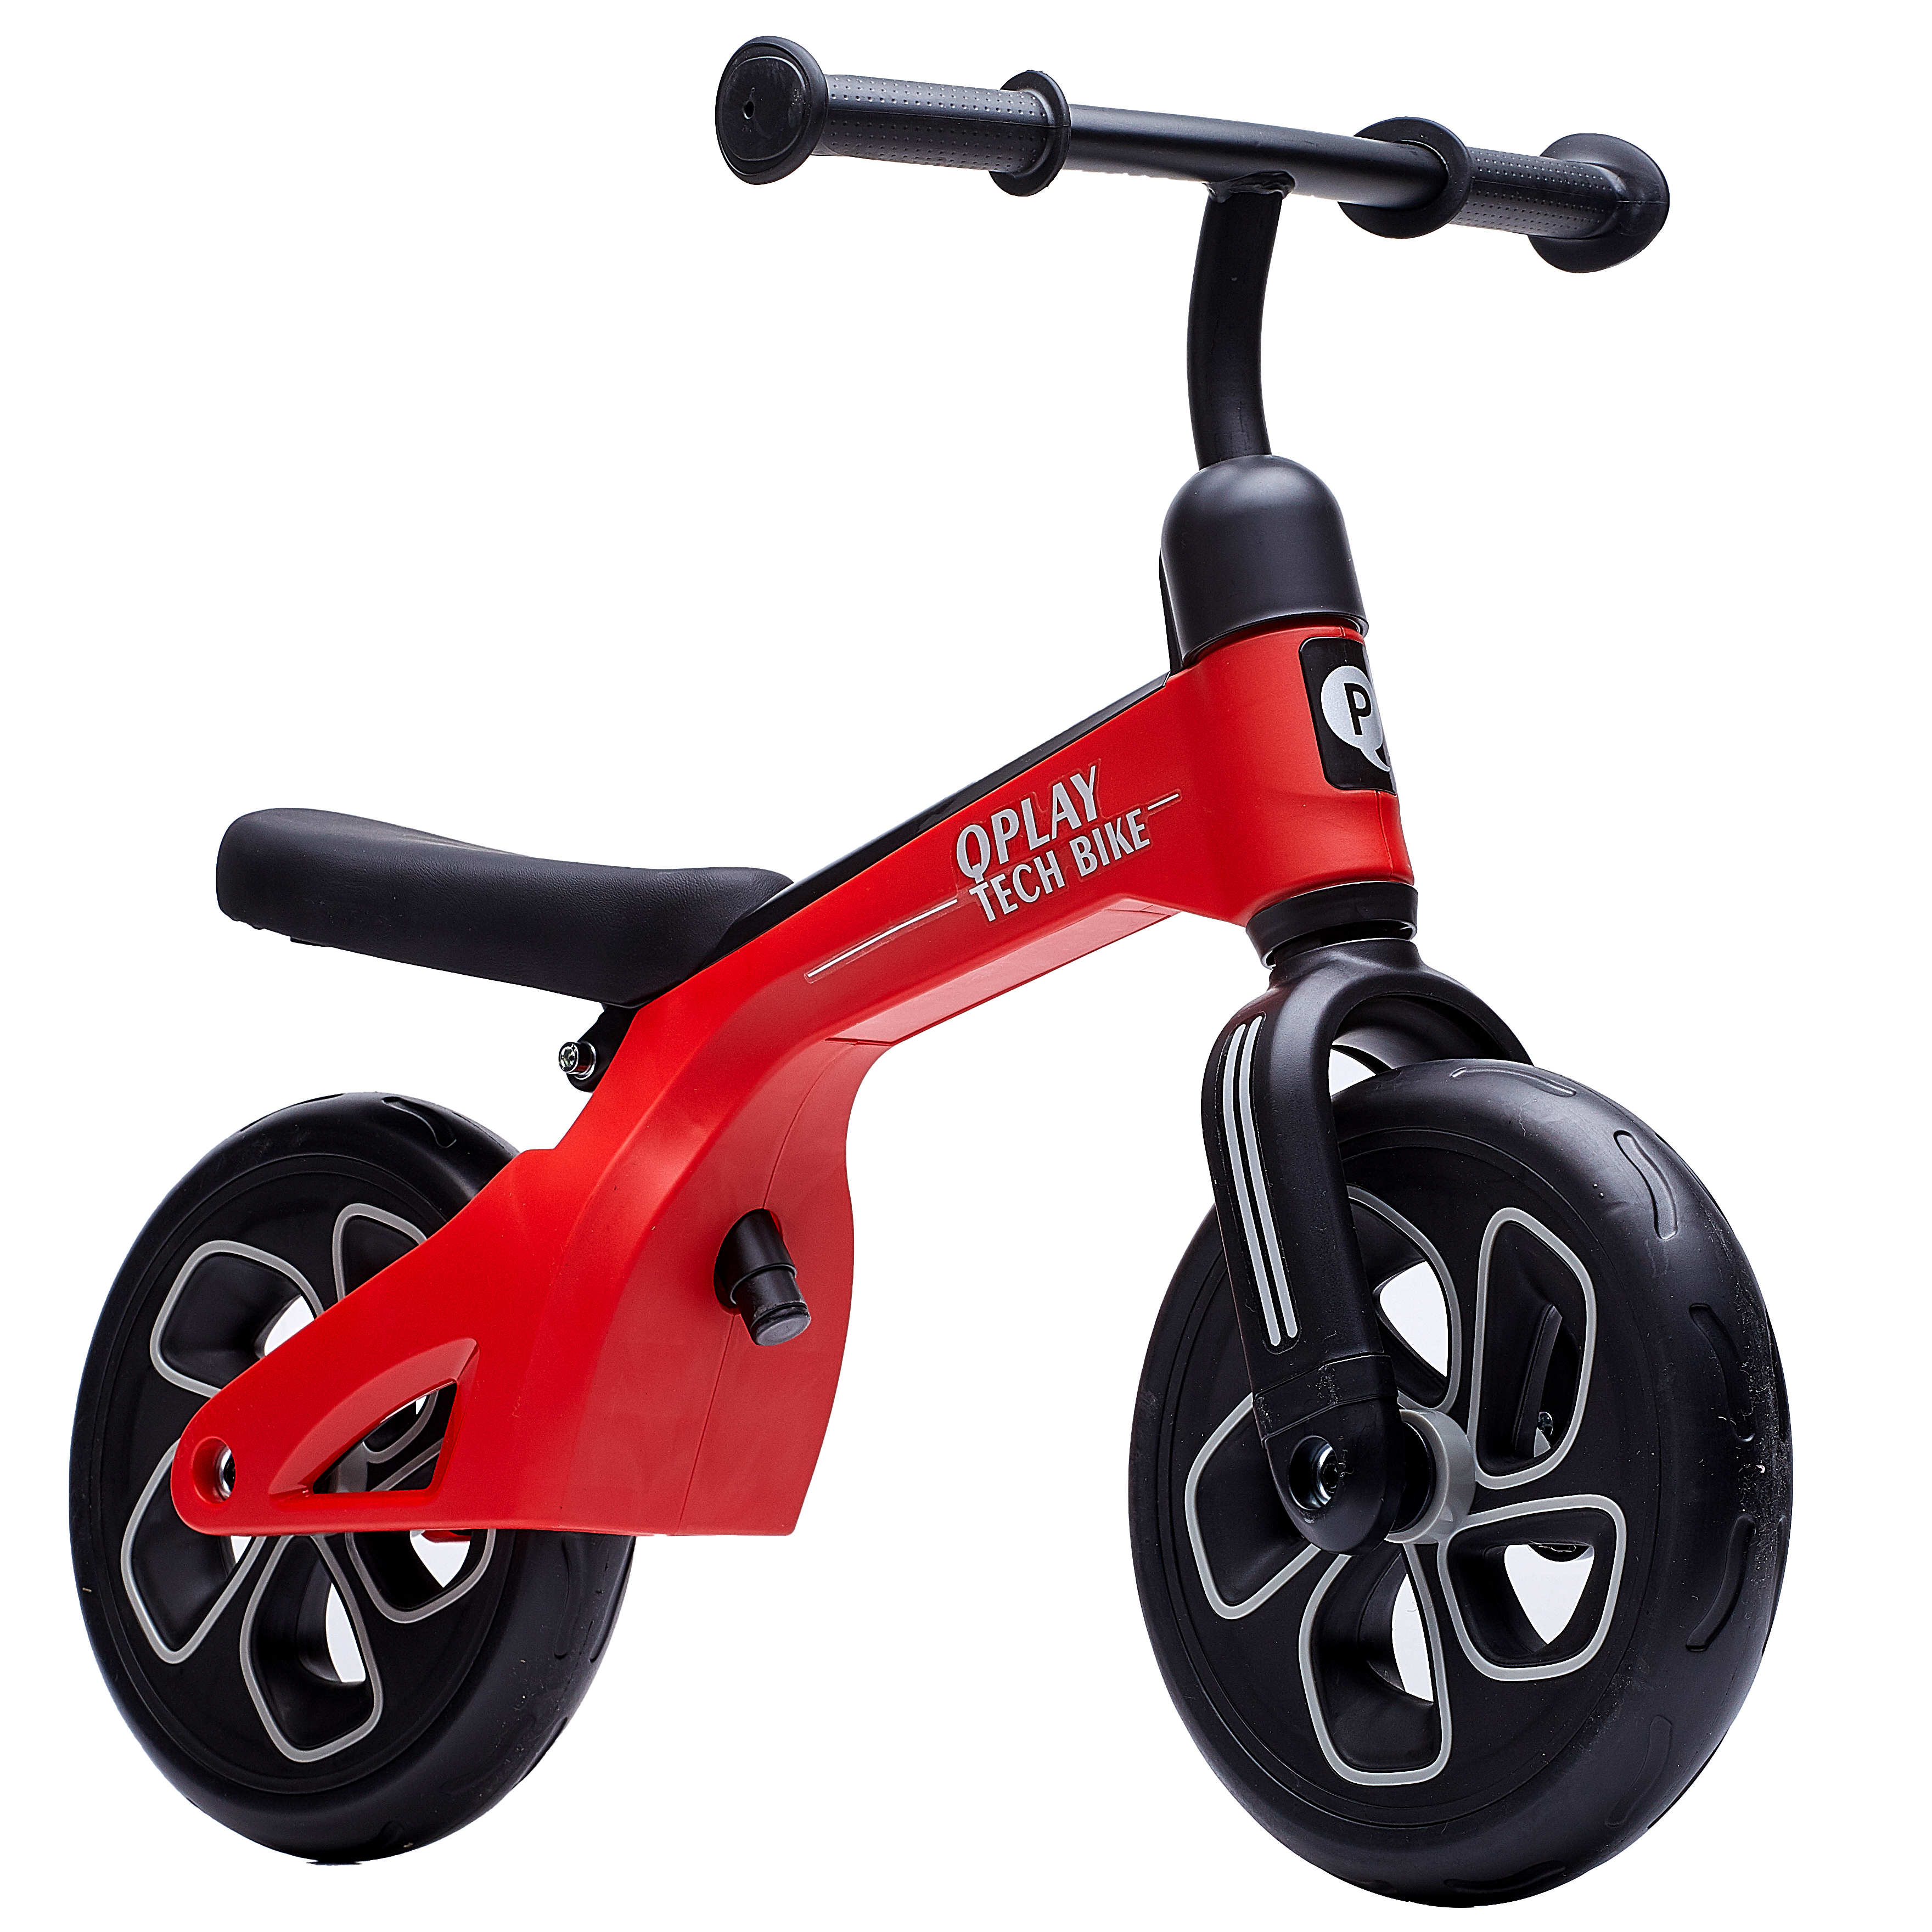 Біговел дитячий Qplay Tech Air, червоний (QP-Bike-001Red) - фото 1